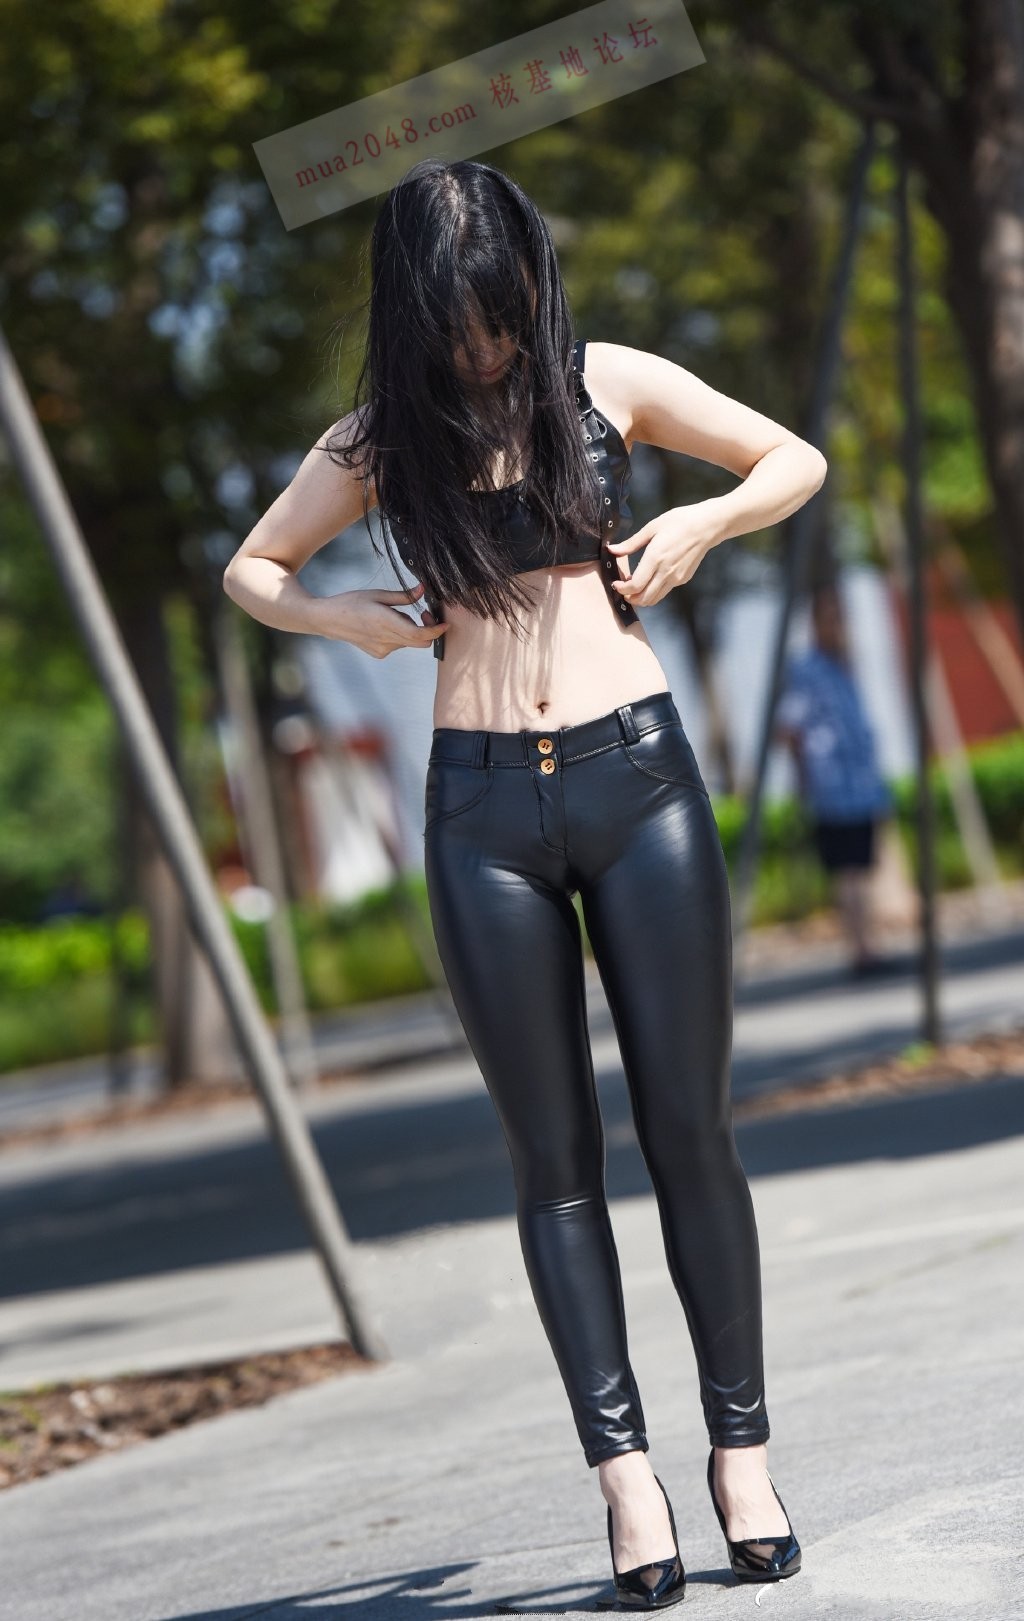 Shiny Leather Pants Tumblr